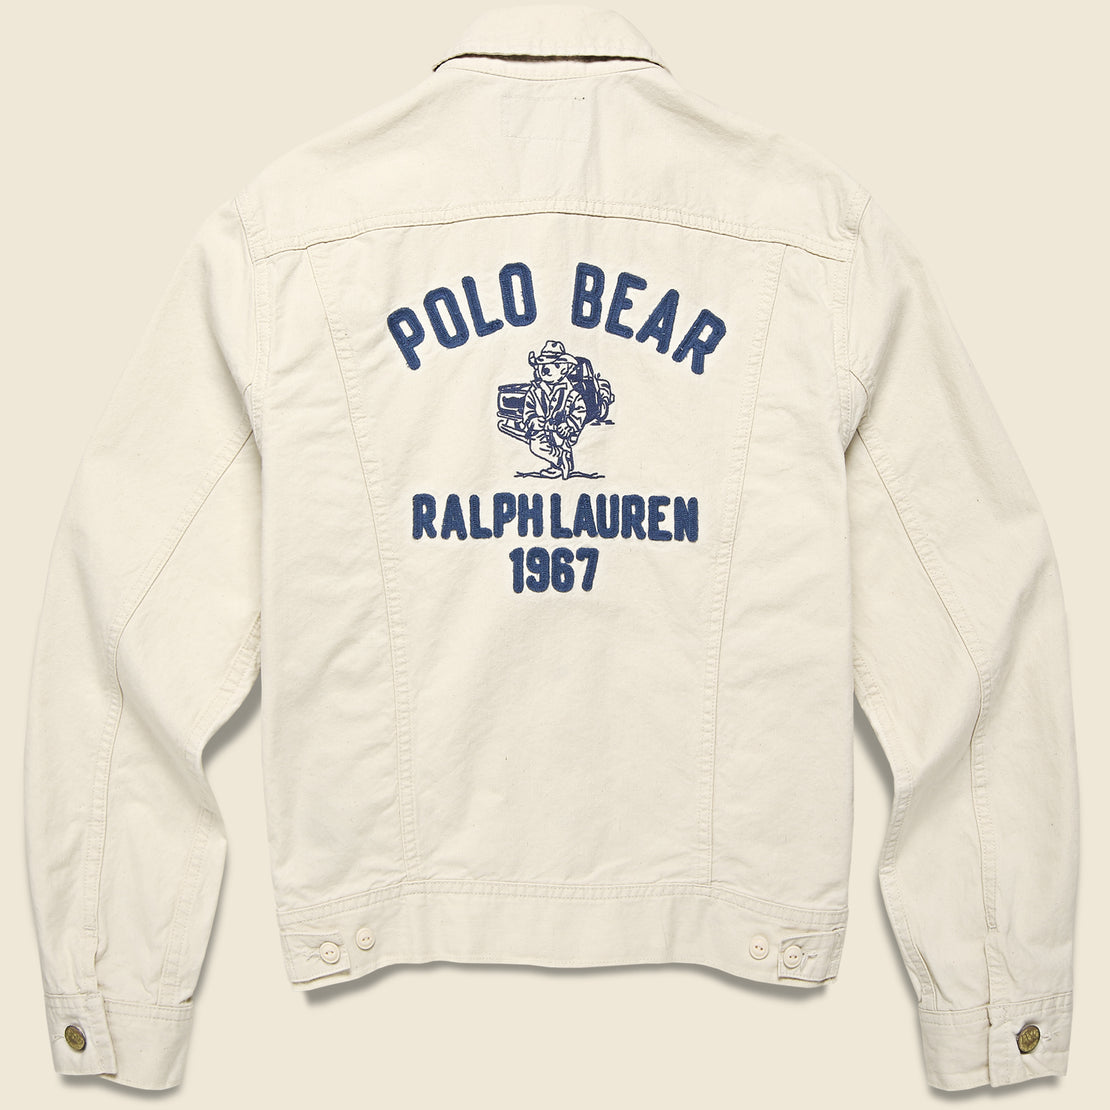 Polo Ralph Lauren Polo Bears Trucker Jacket - Ecru